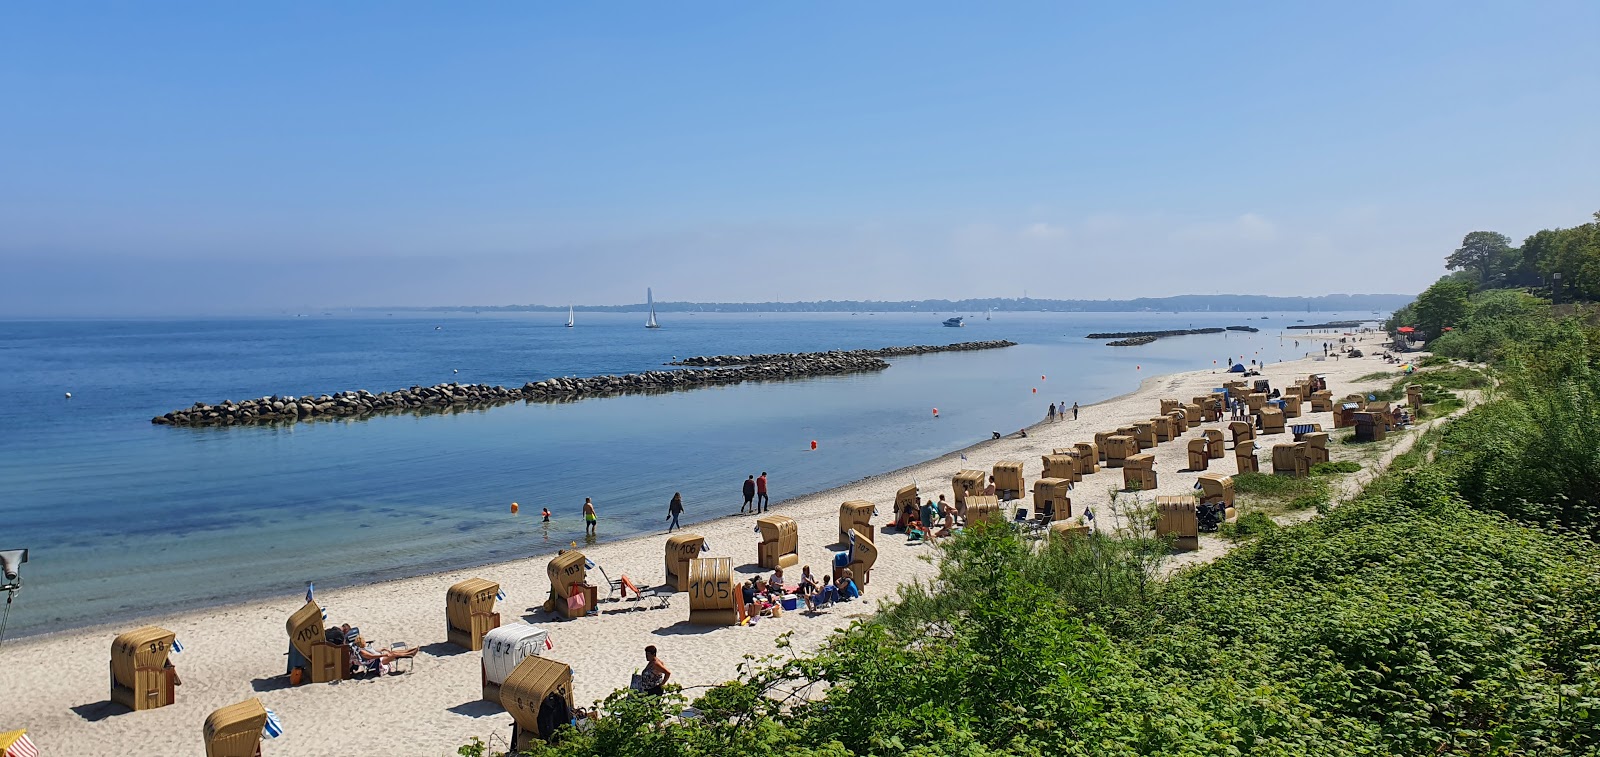 Fotografie cu Schilksee Strandbad - locul popular printre cunoscătorii de relaxare